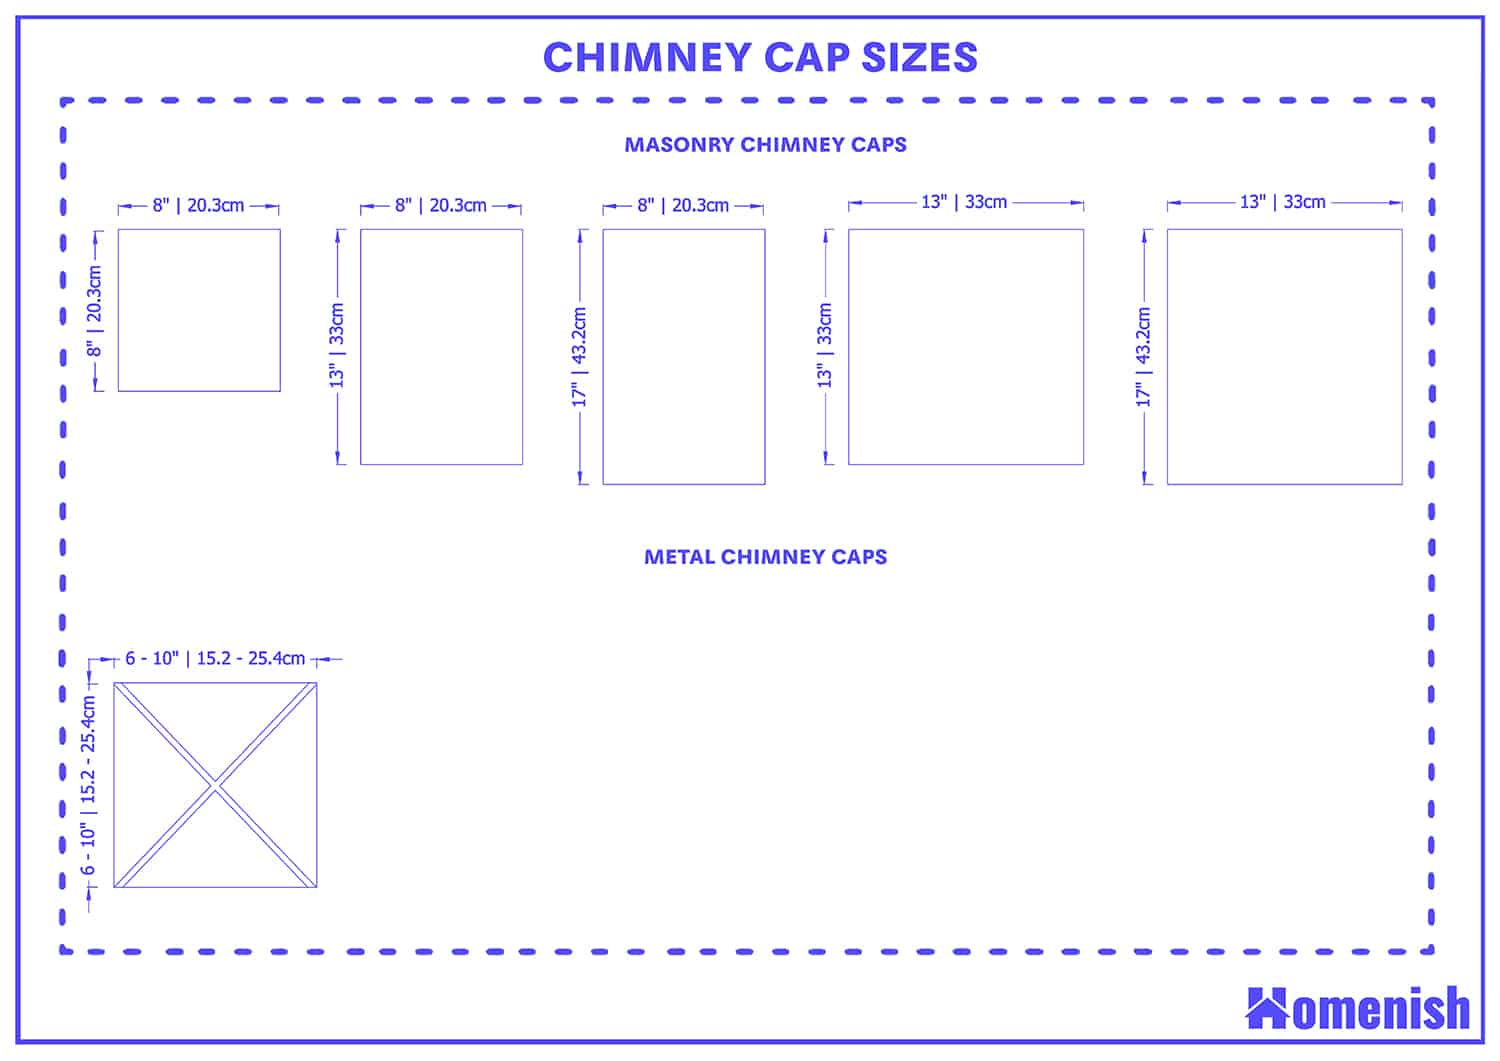 Chimney cap sizes